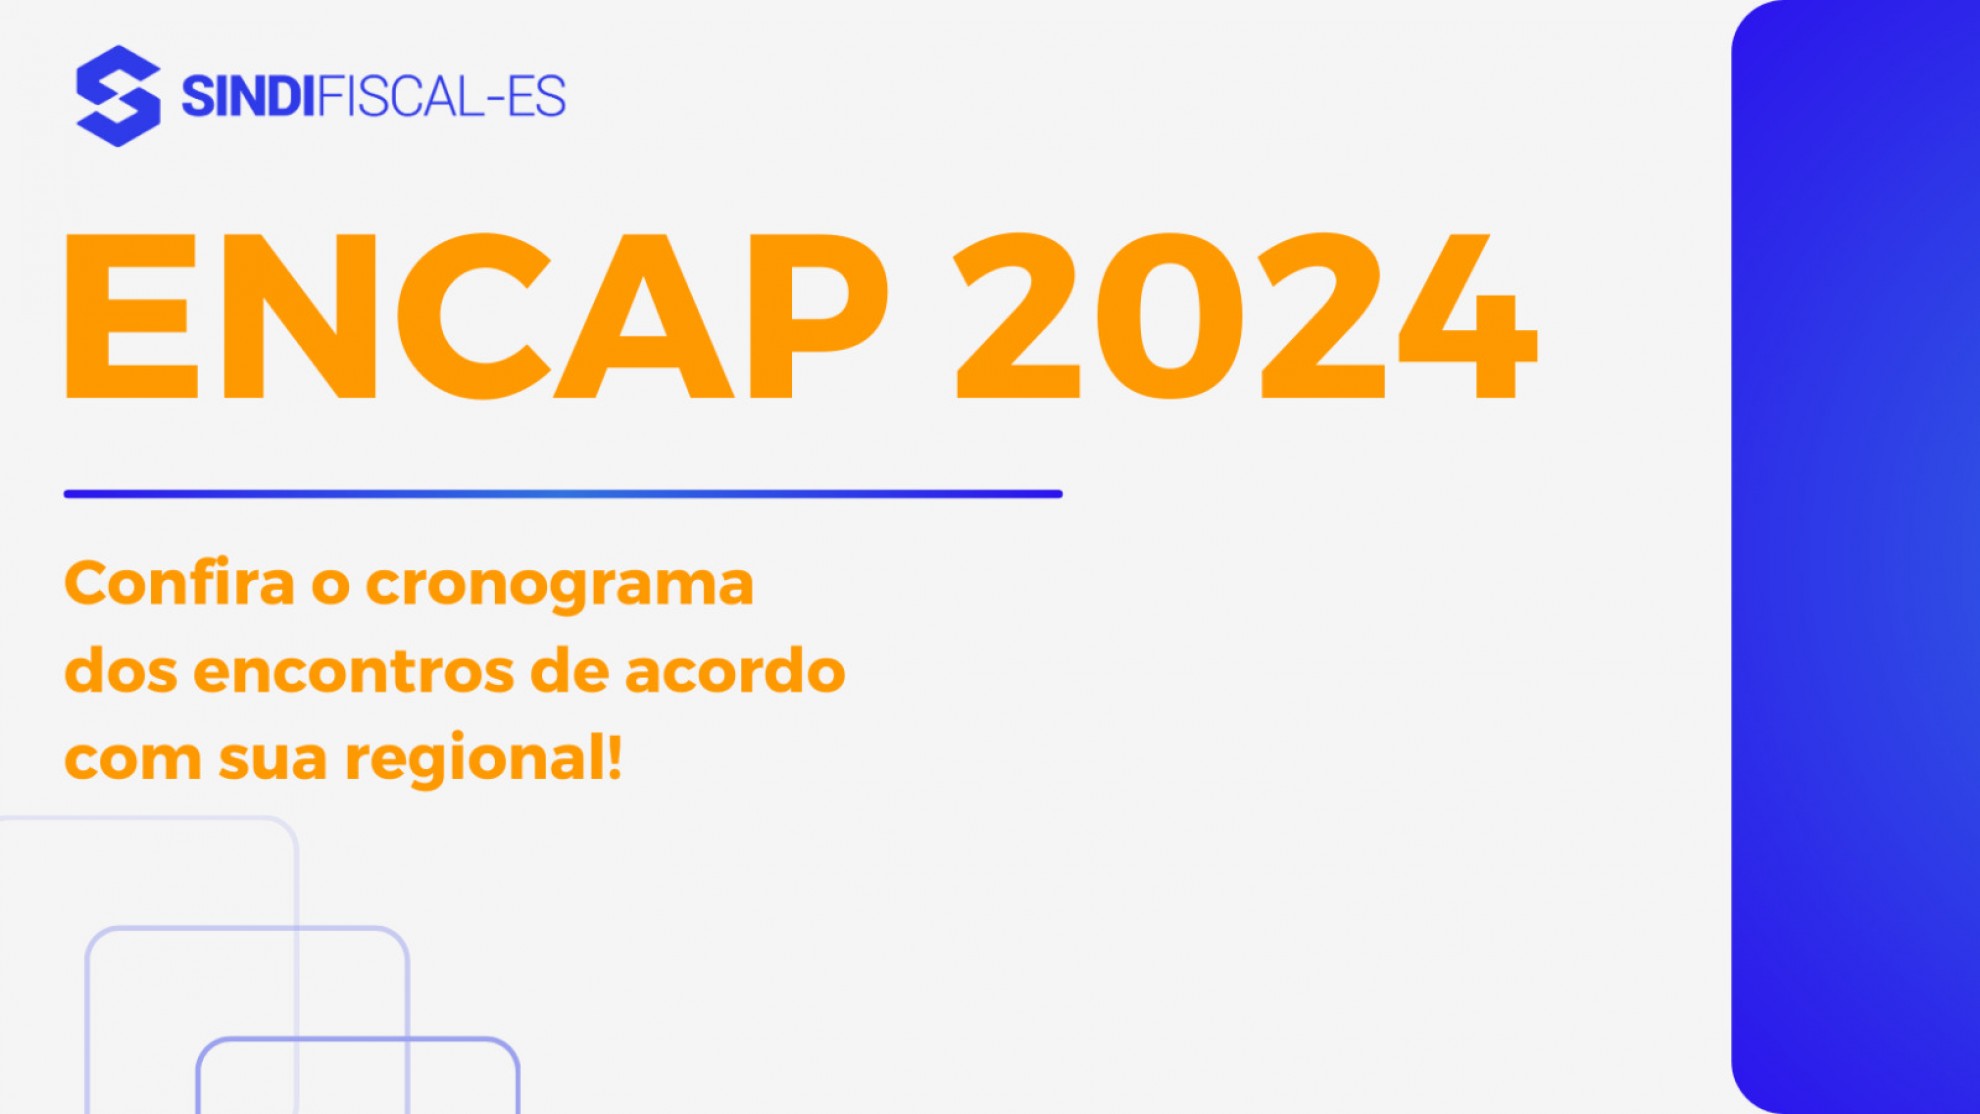 ENCAP 2024: Confira o cronograma dos encontros de acordo com a sua regional!